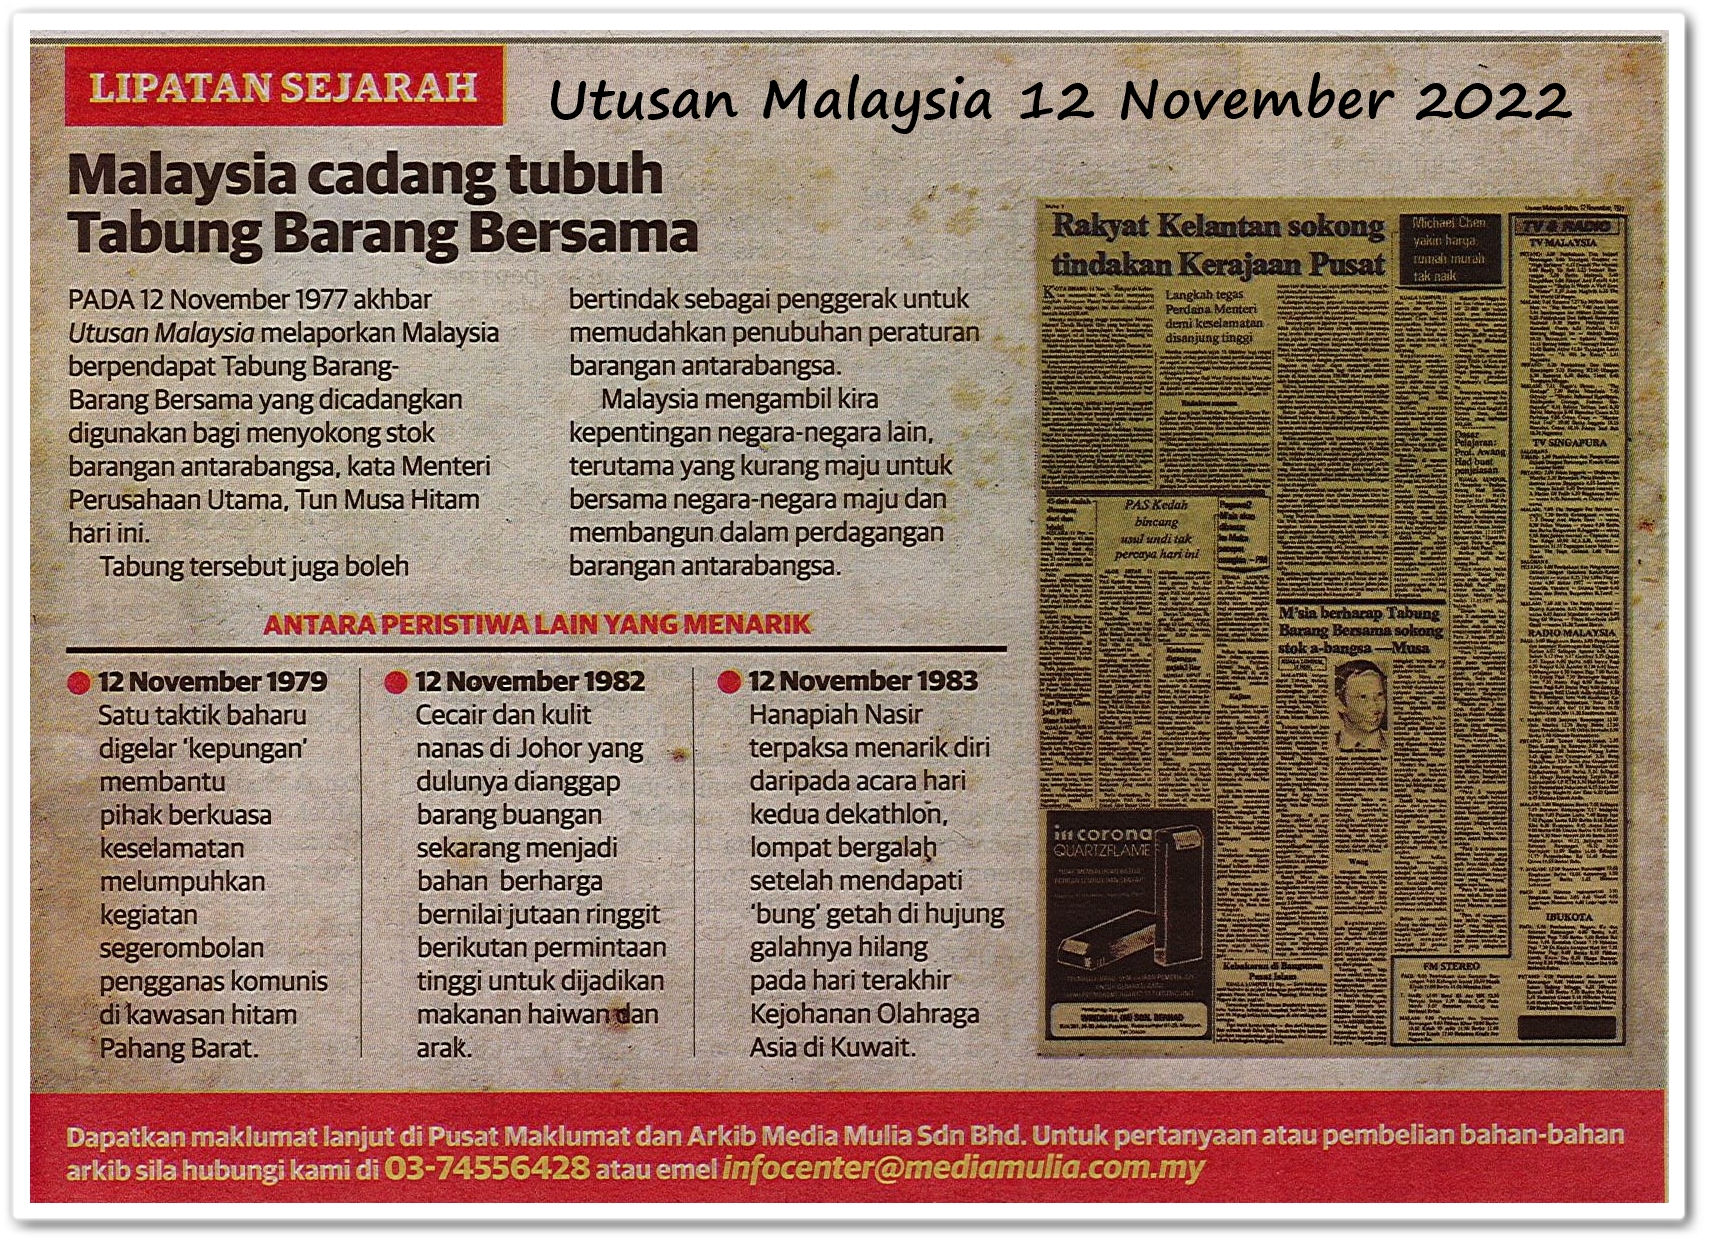 Lipatan sejarah 12 November - Keratan akhbar Utusan Malaysia 12 November 2022